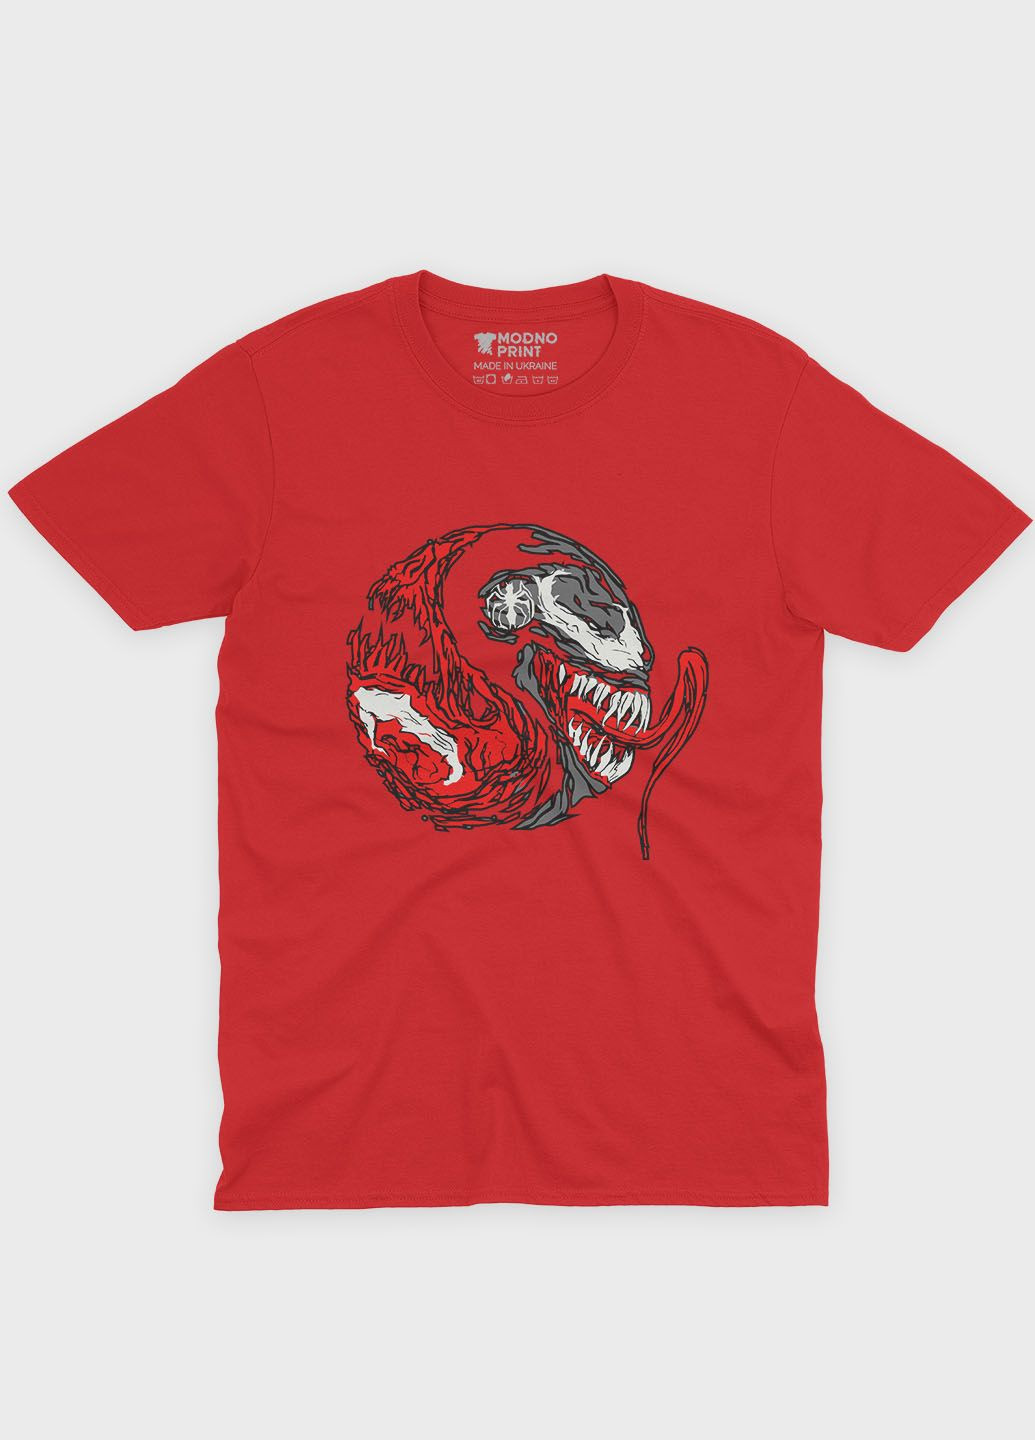 Красная демисезонная футболка для девочки с принтом супервора - веном (ts001-1-sre-006-013-013-g) Modno